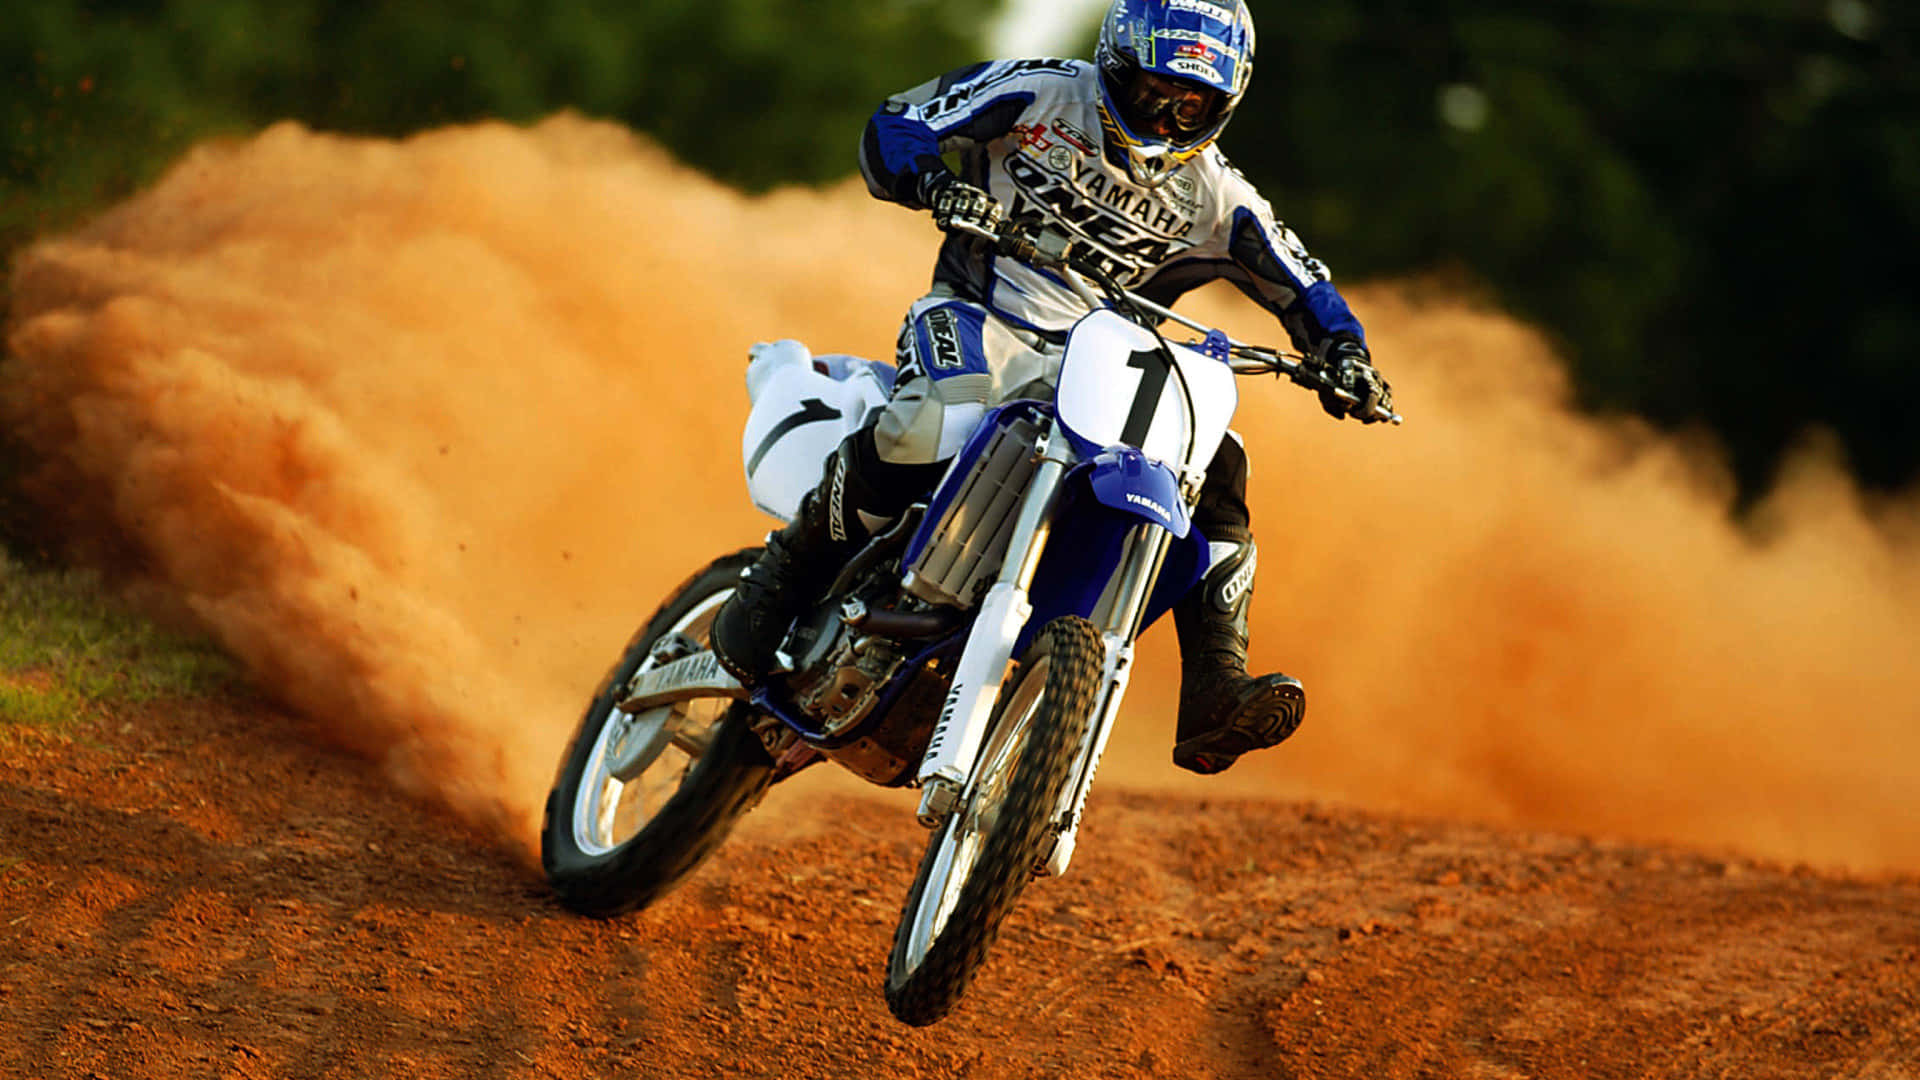 Luca Ghilardi 4 motorcycle super motor stunt night dirt exhaust bike  HD phone wallpaper  Peakpx